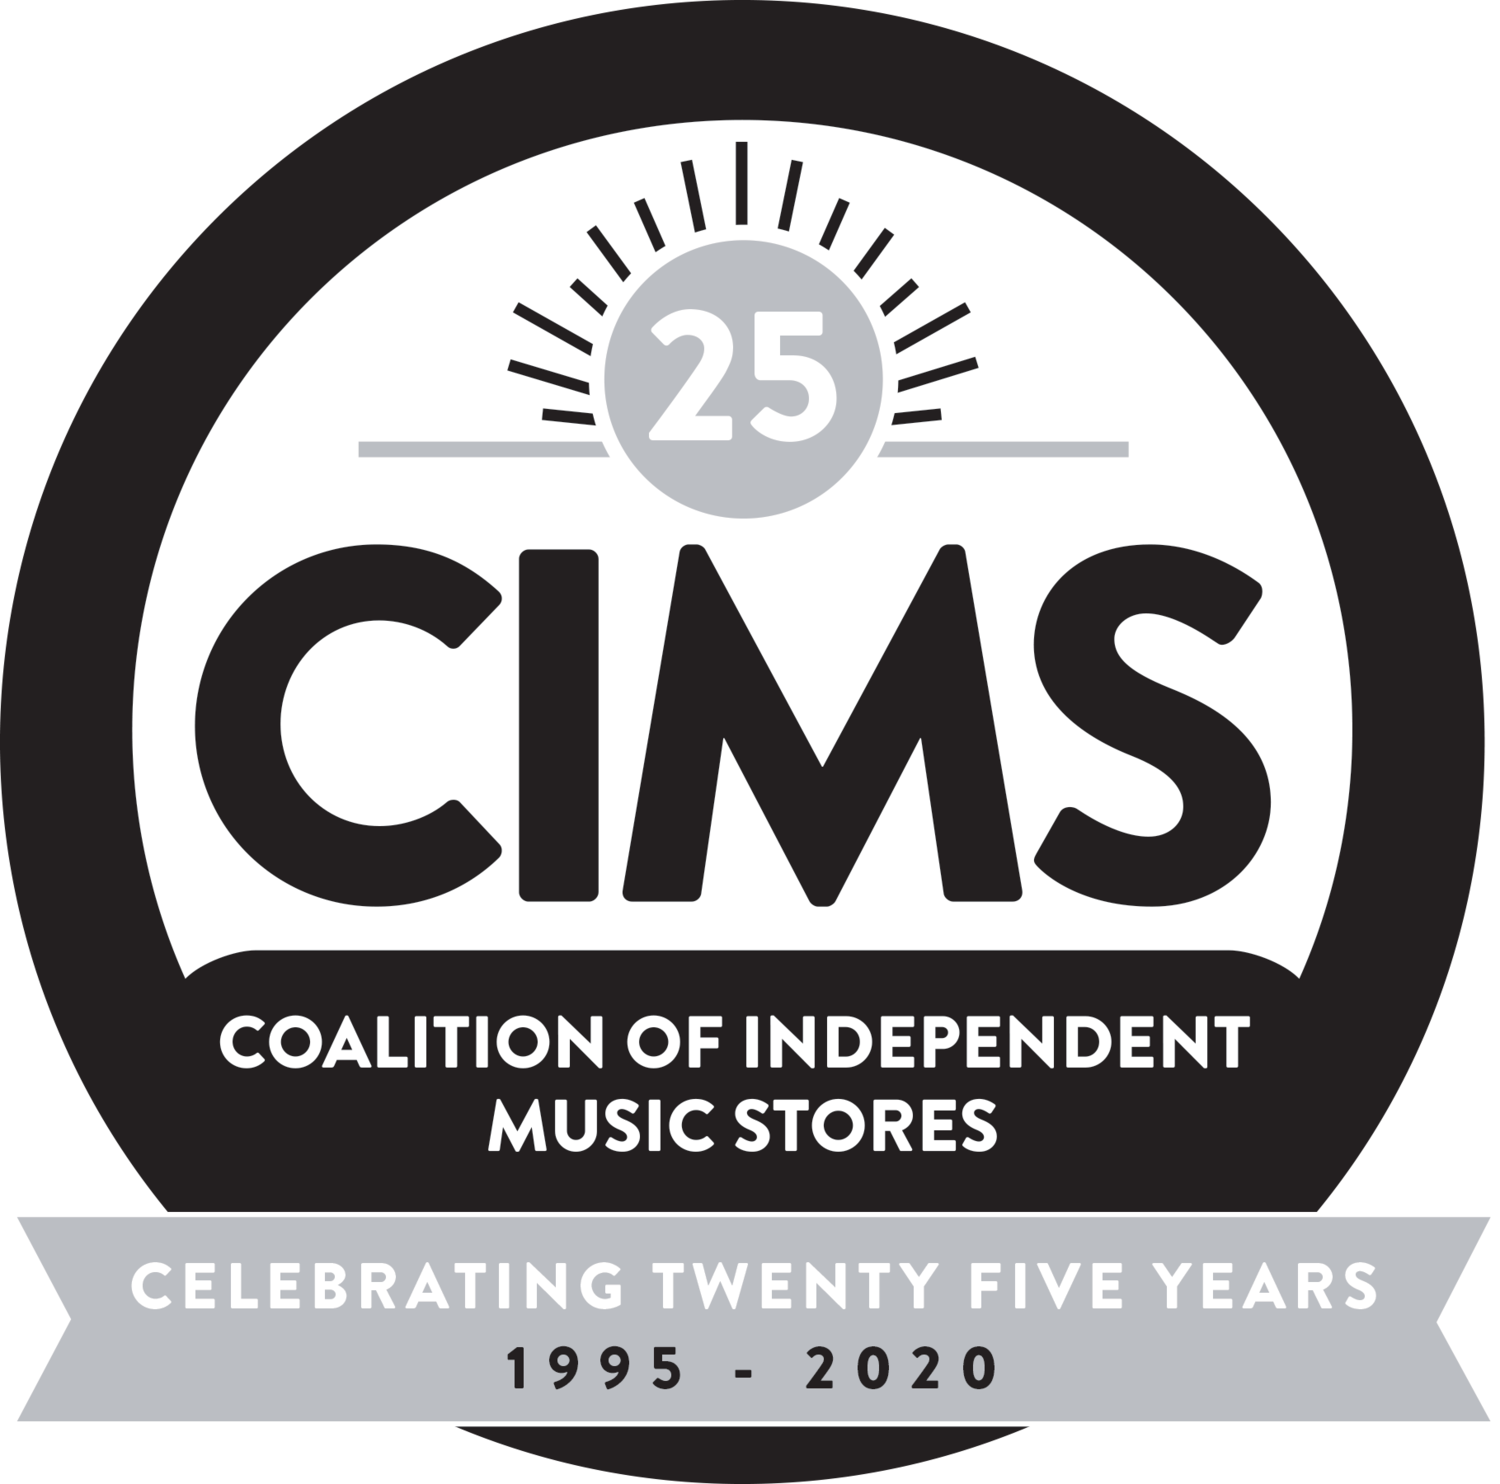 www.cimsmusic.com